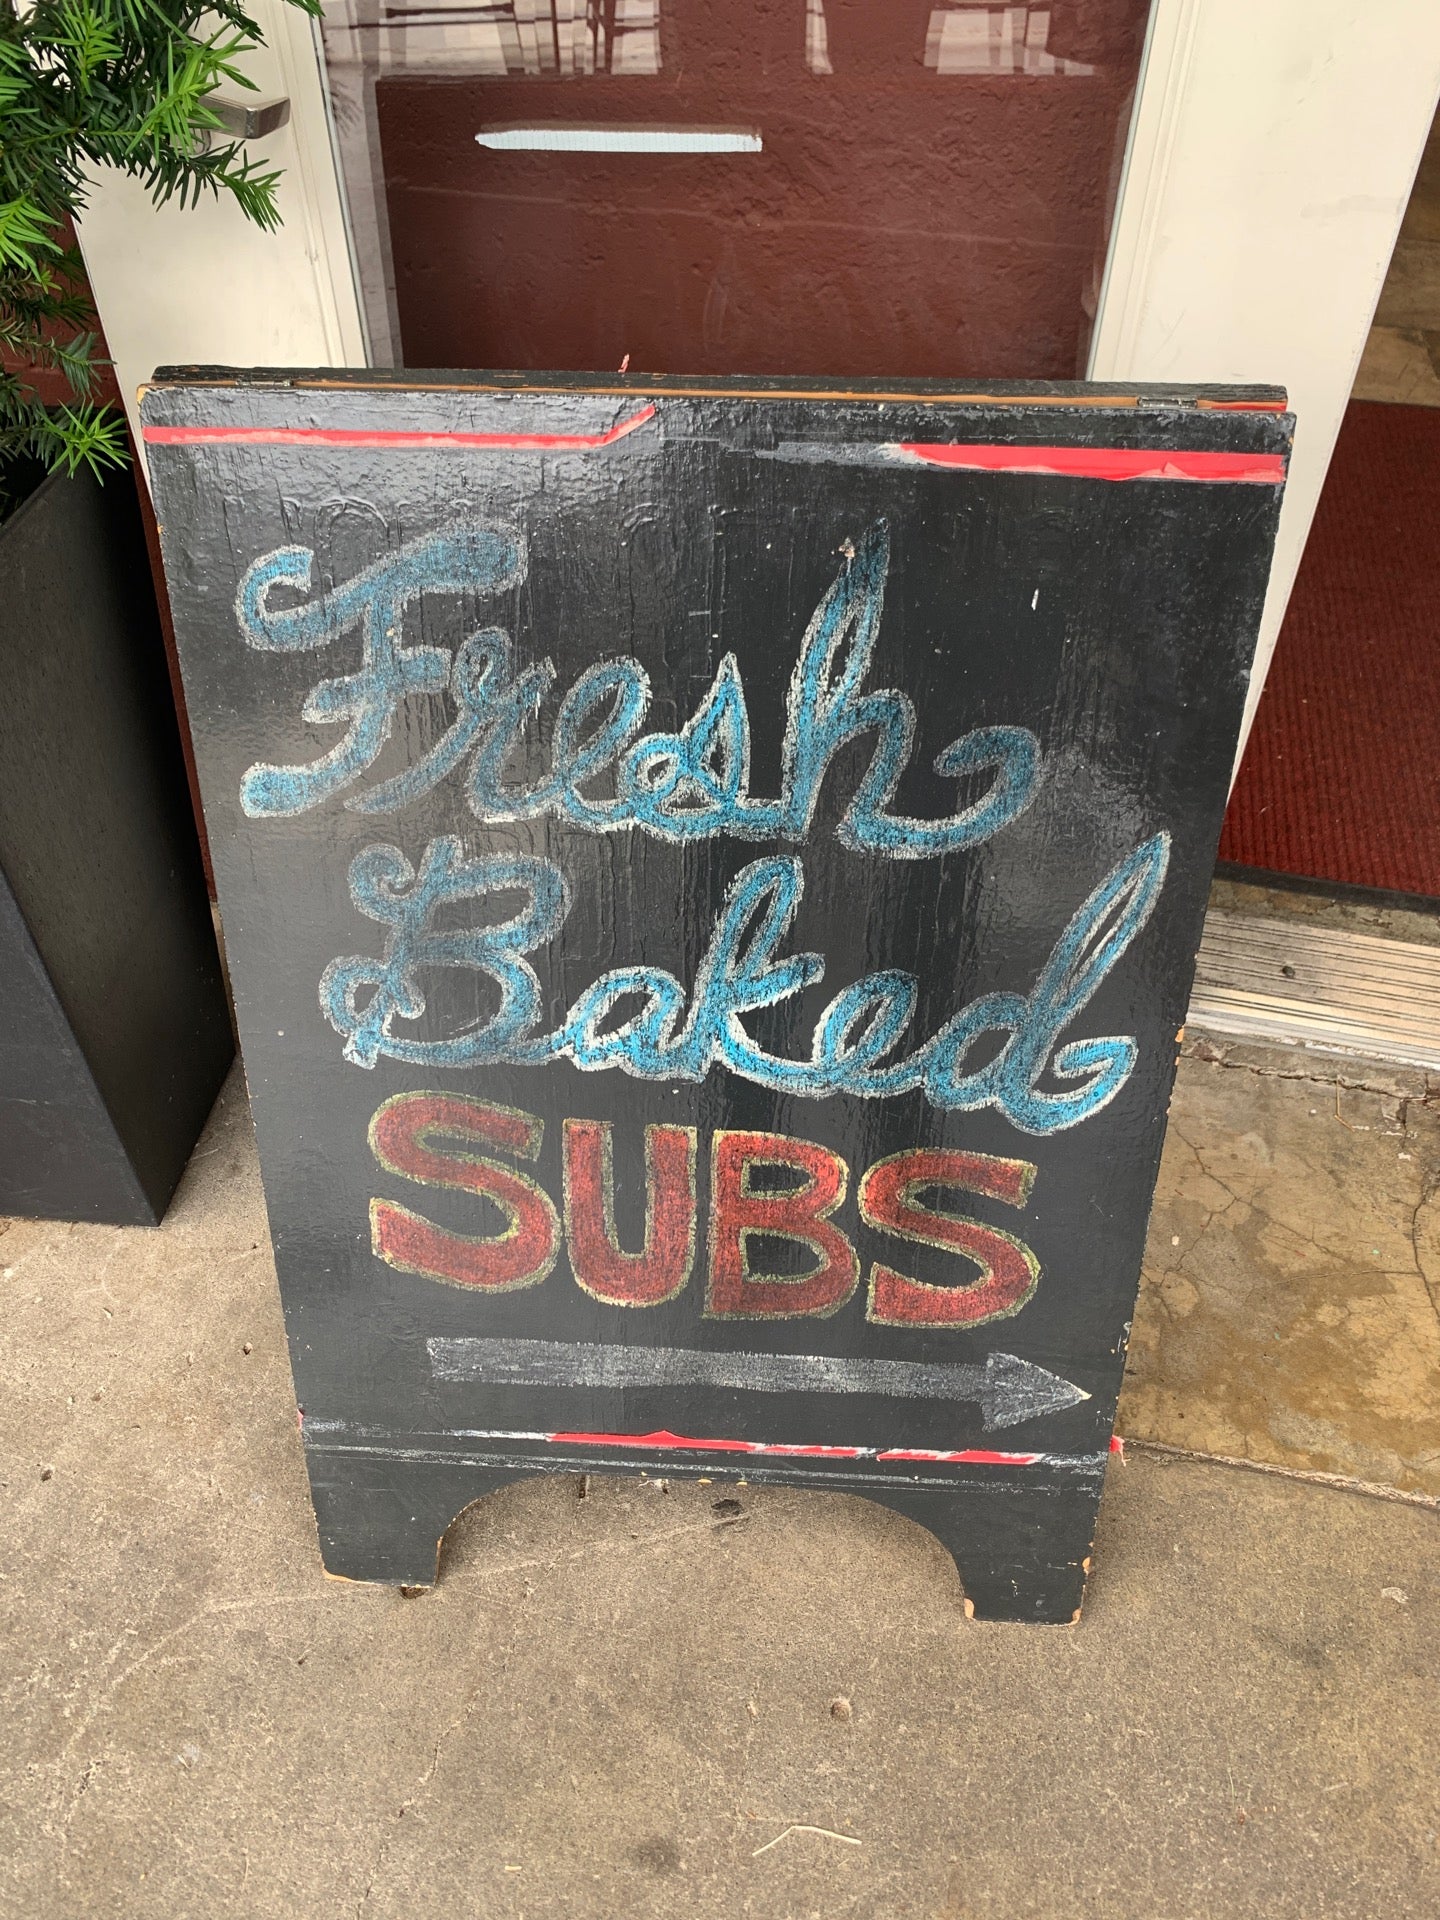 The Baker's Mark